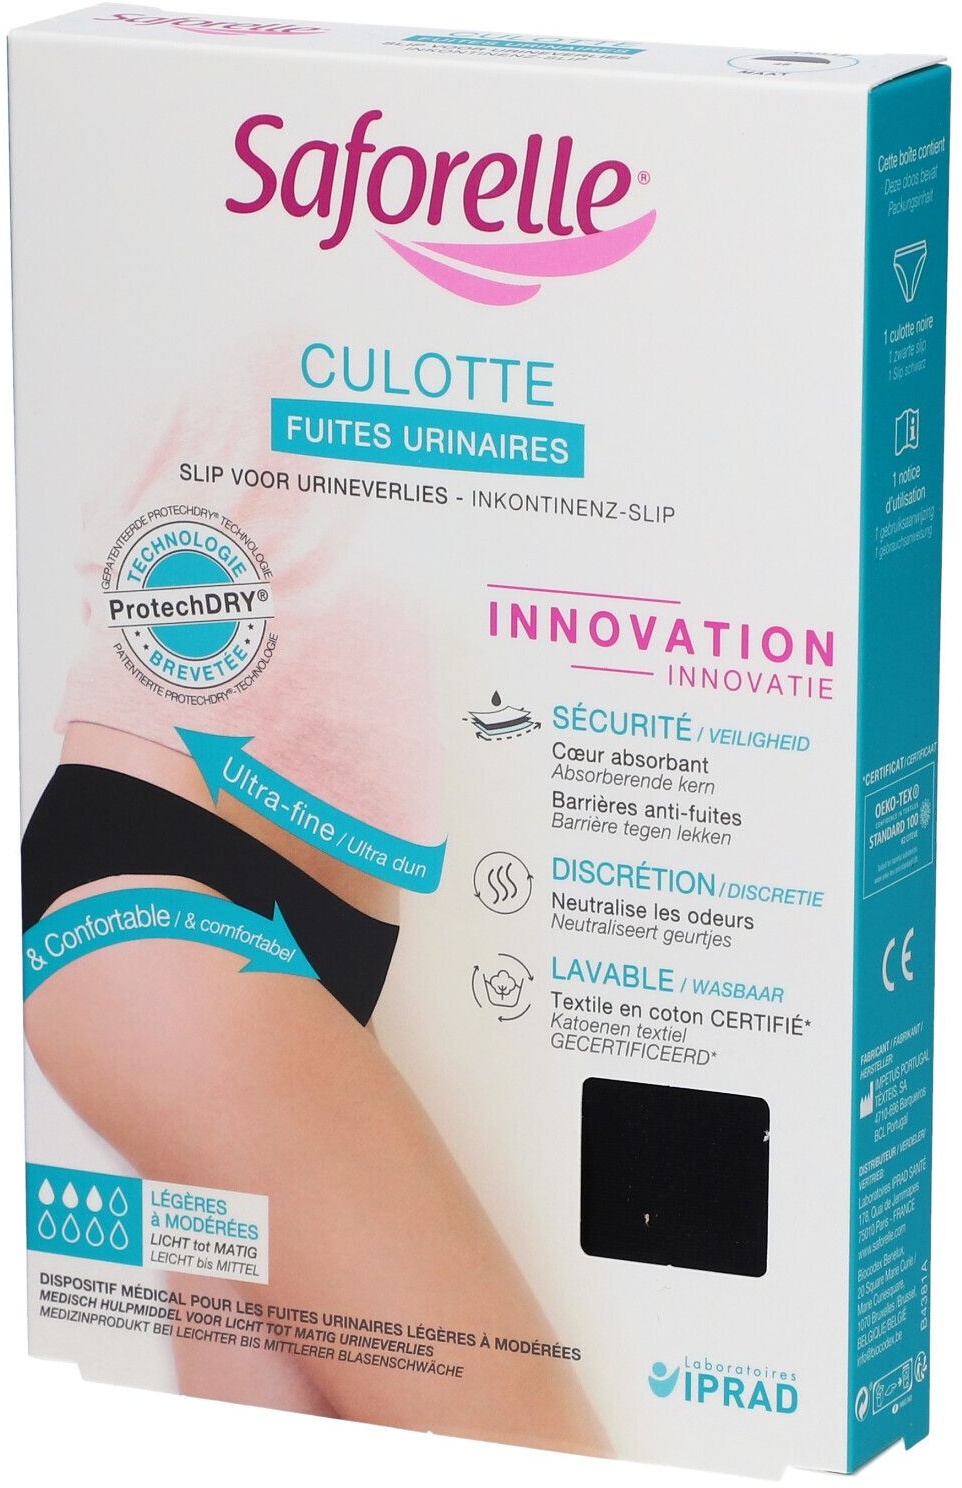 Saforelle® Culotte Fuites Urinaires Taille 46 1 pc(s) Slips pour l'incontinence